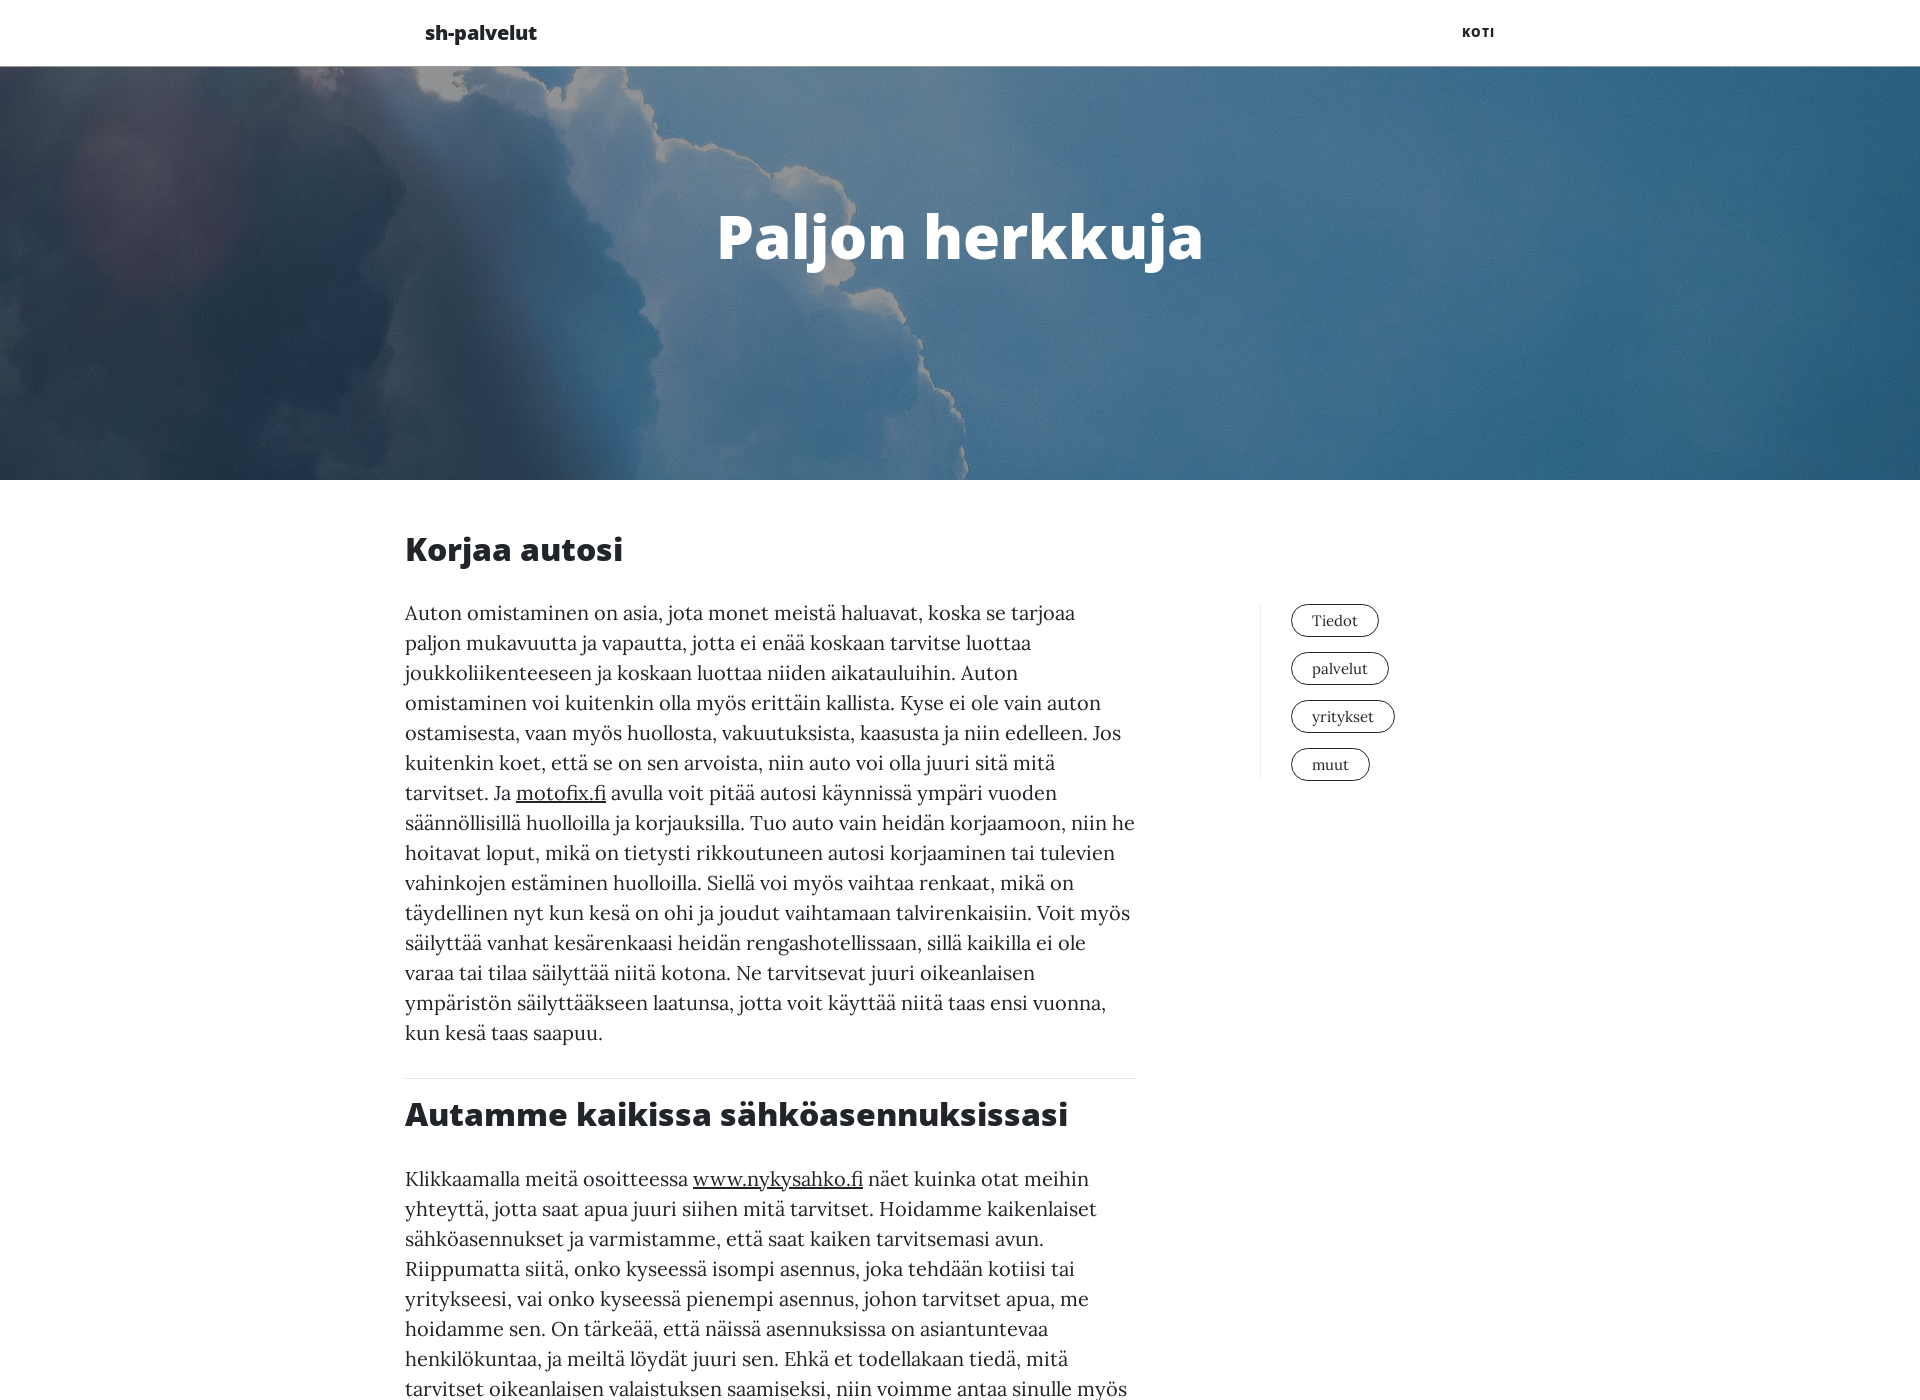 Skärmdump för sh-palvelut.fi